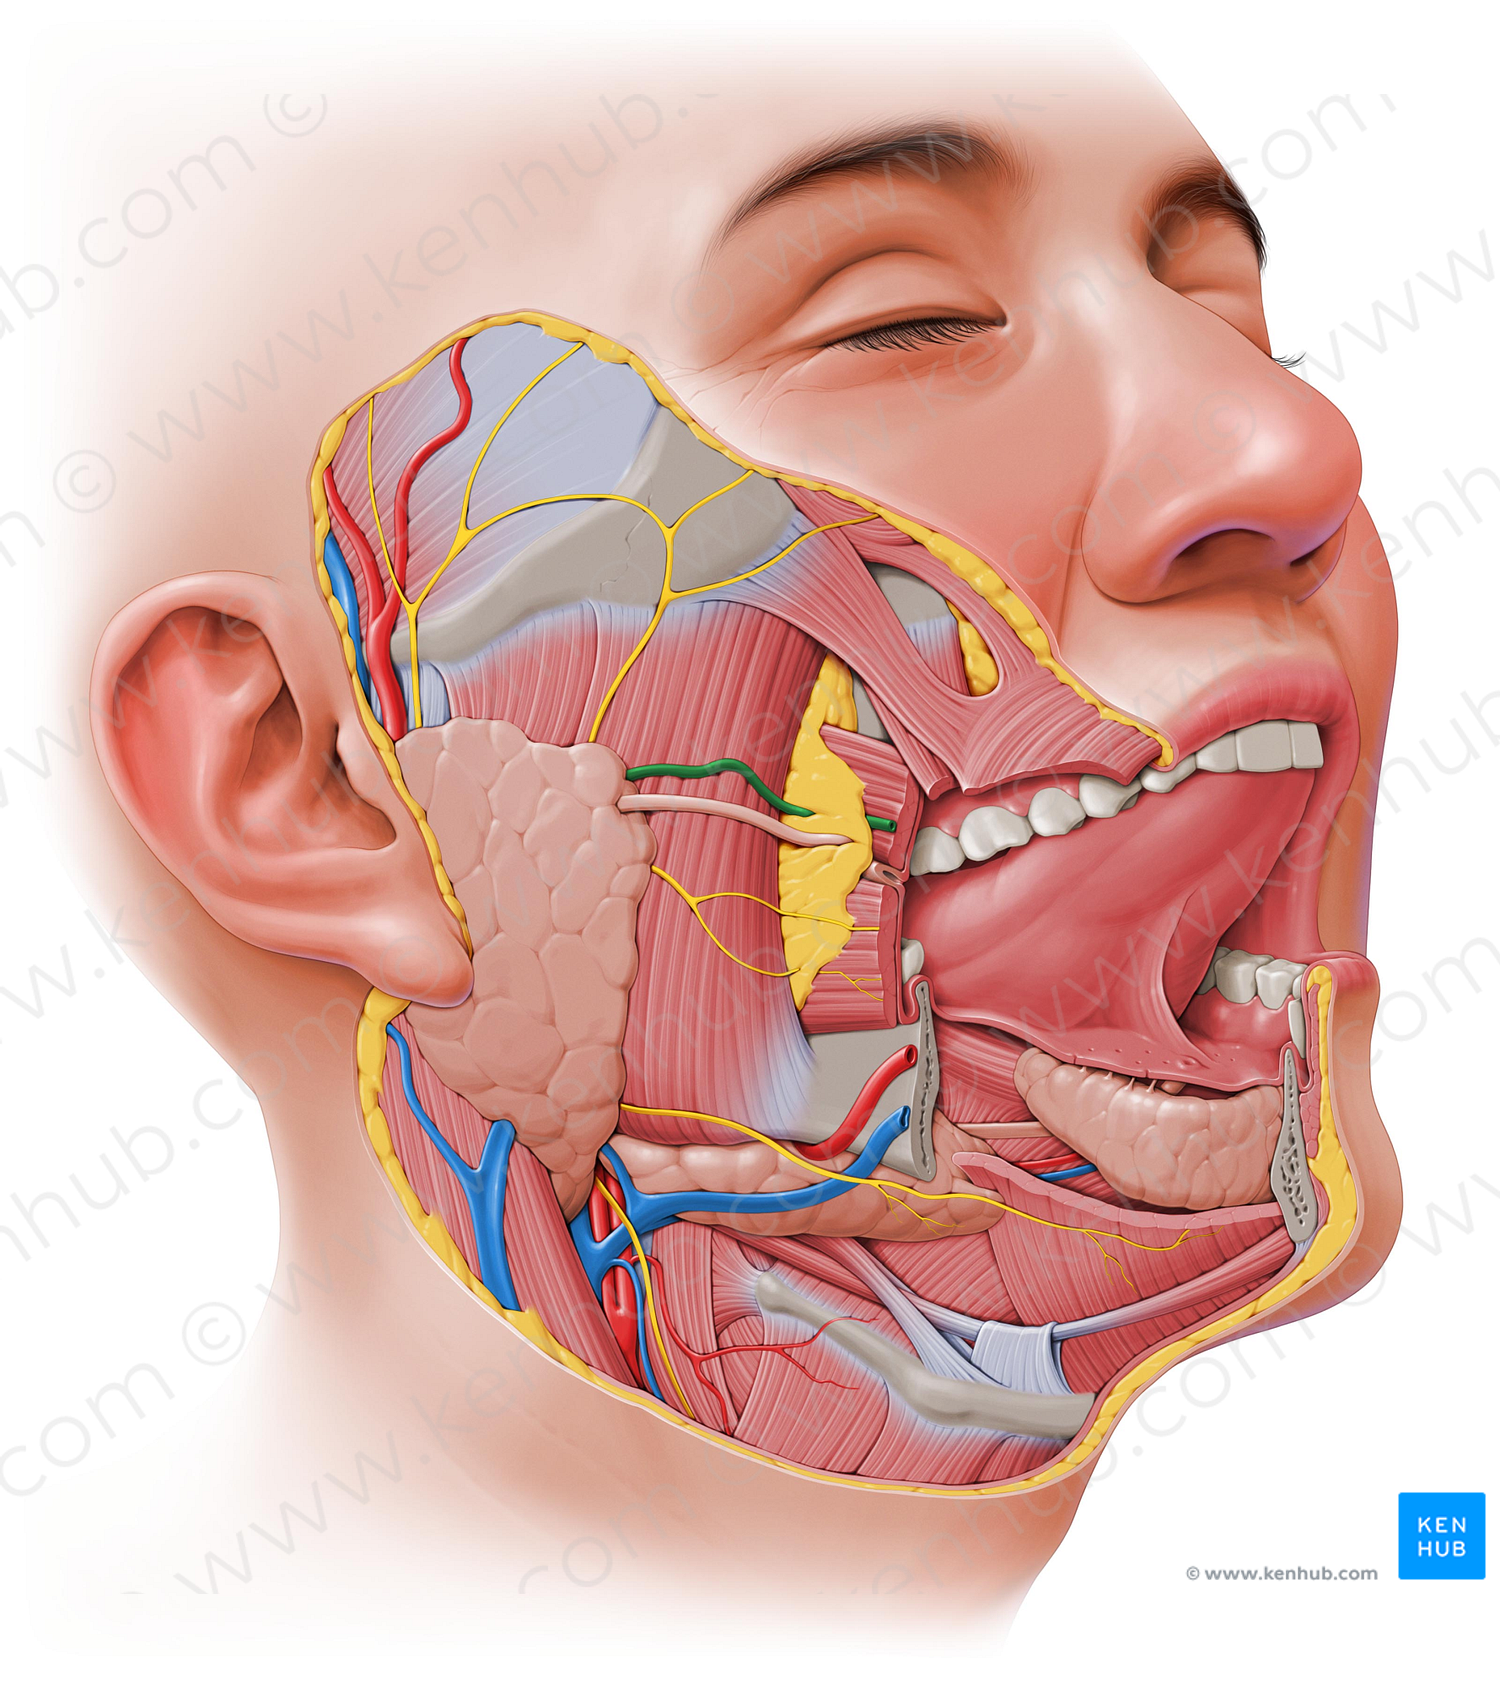 Transverse facial artery (#1950)